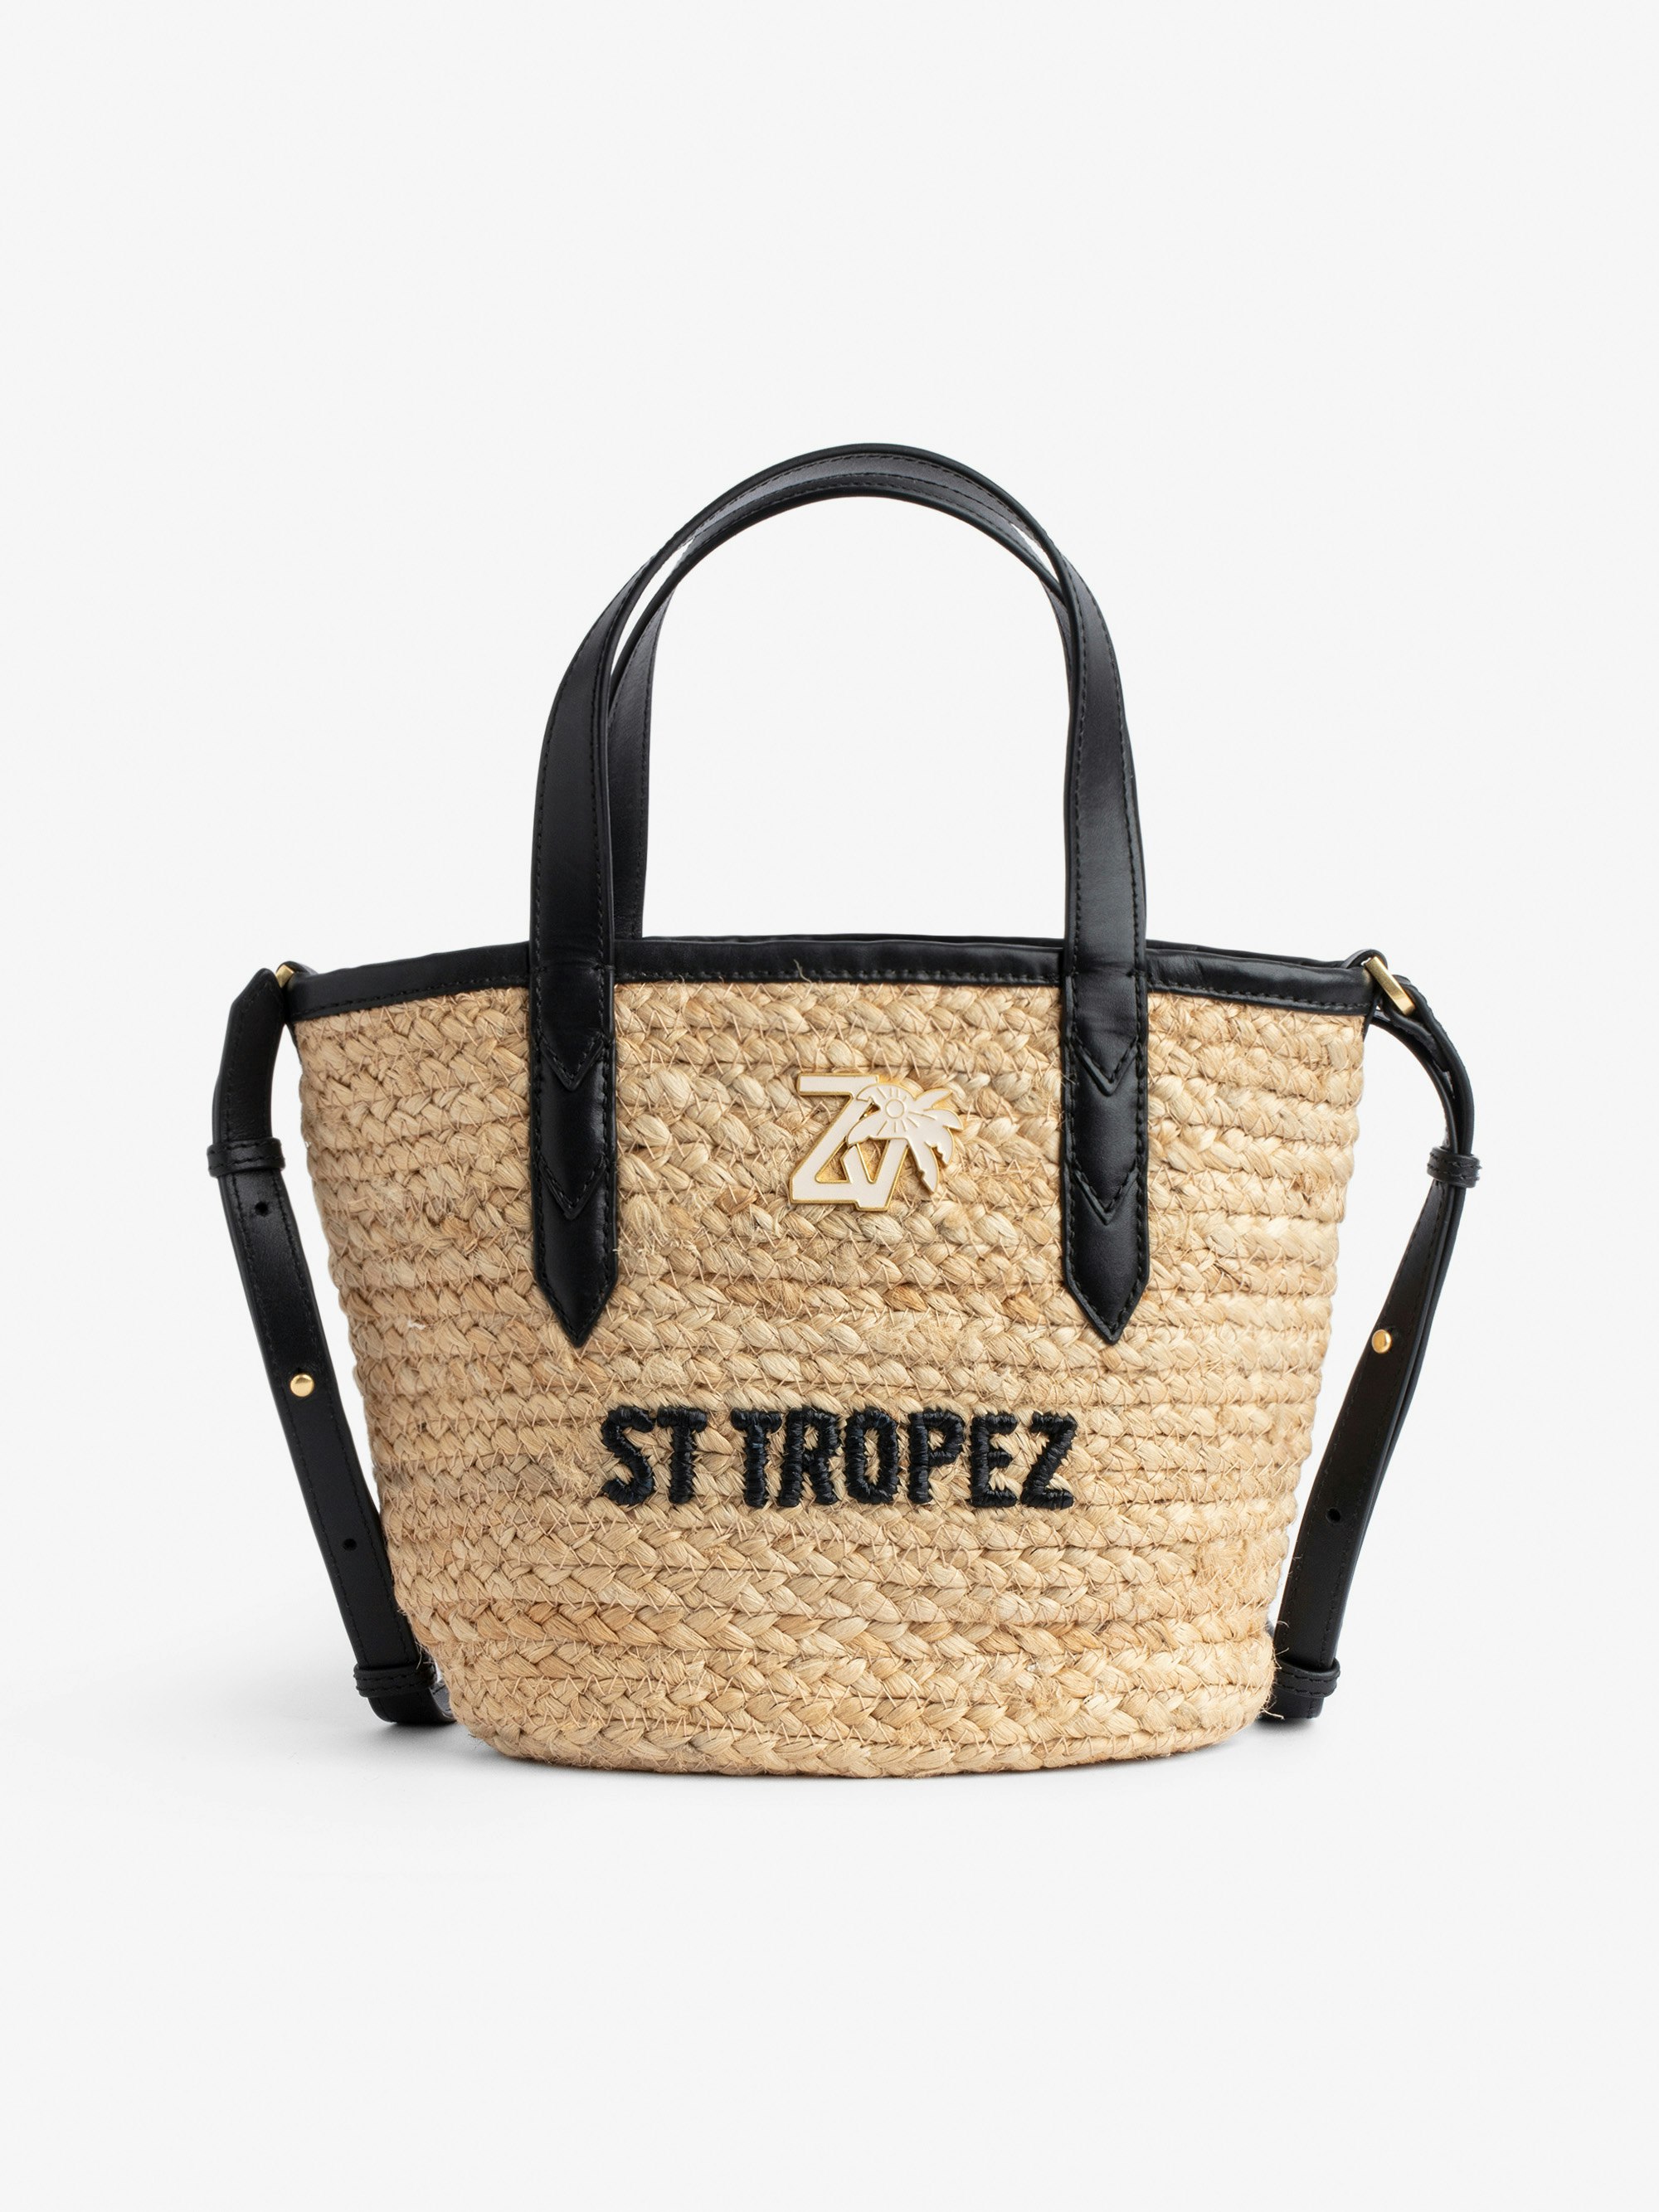 Borsa Le Baby Beach - Borsa in paglia con tracolla in pelle nera, con ricamo "St Tropez" e impreziosita da un charm ZV - Donna